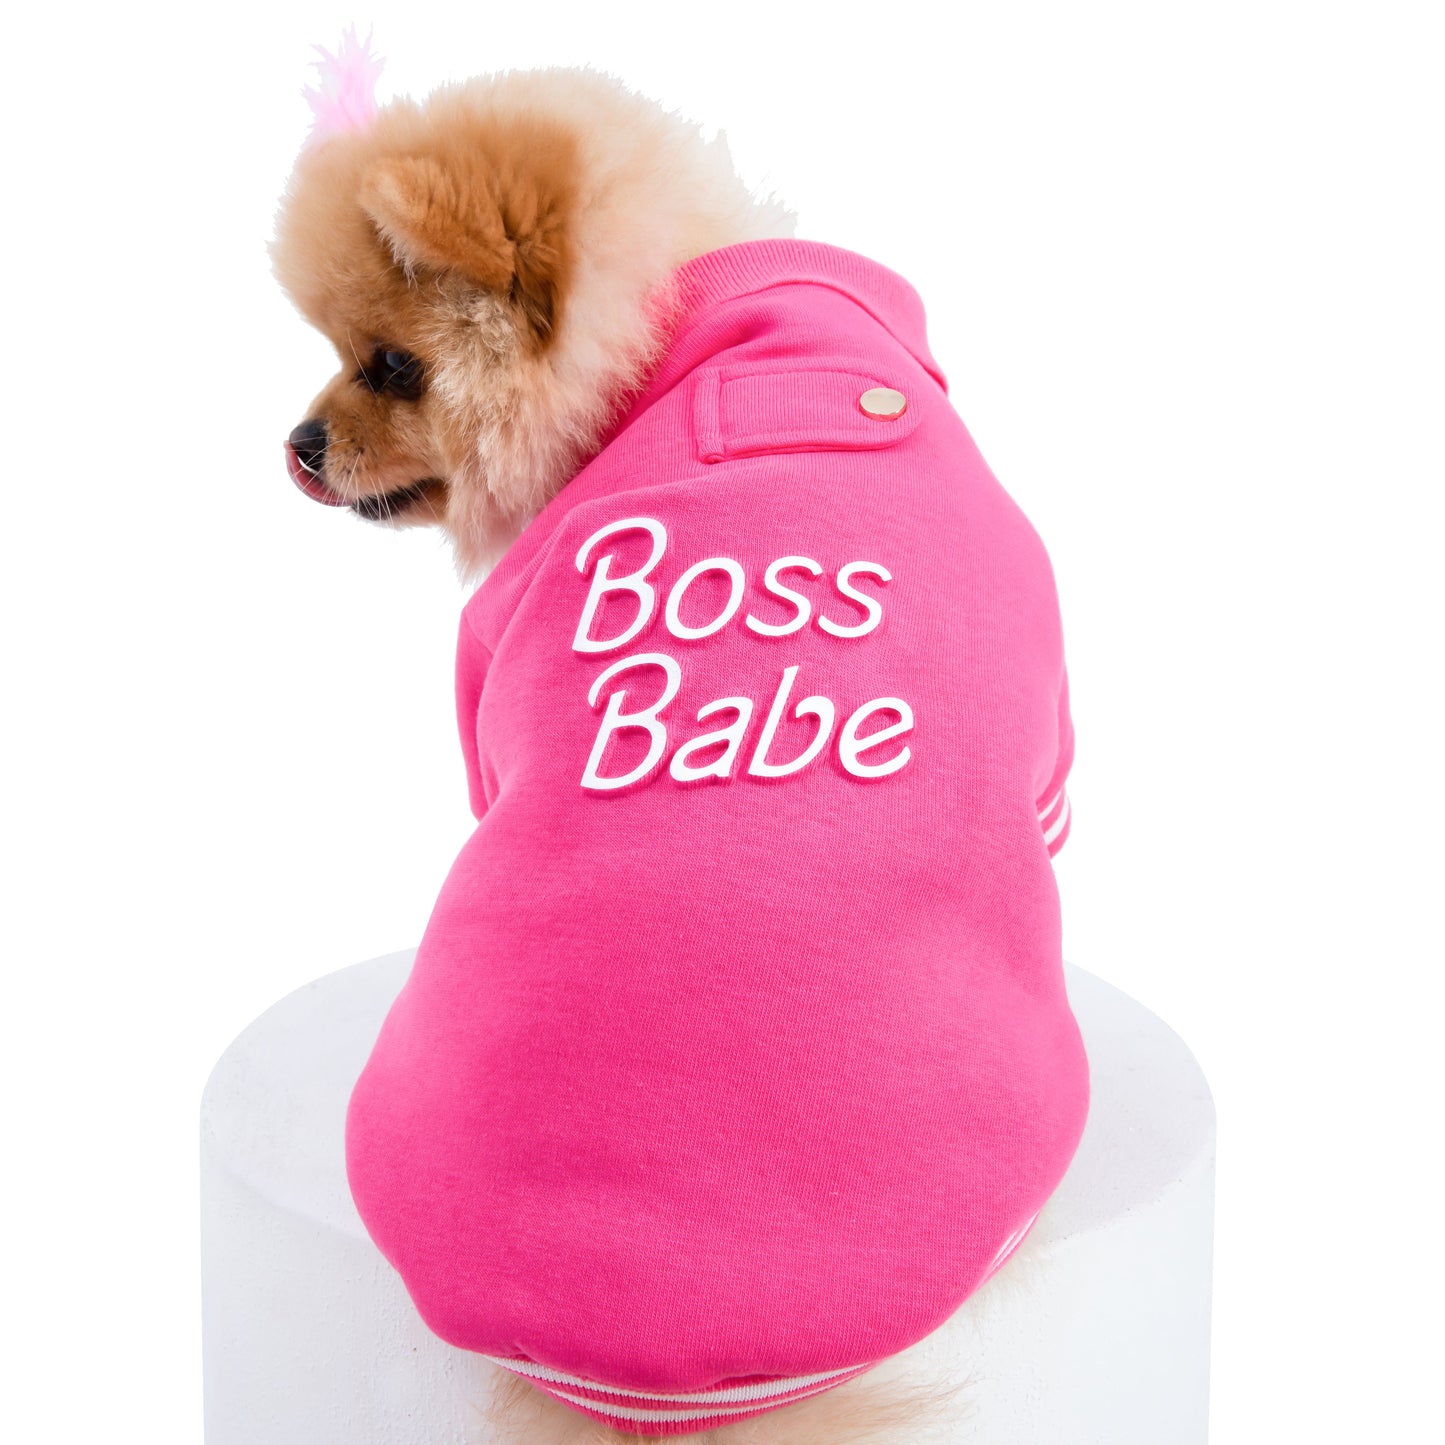 Boss Babe Dog Sweatshirt by Moshiqa